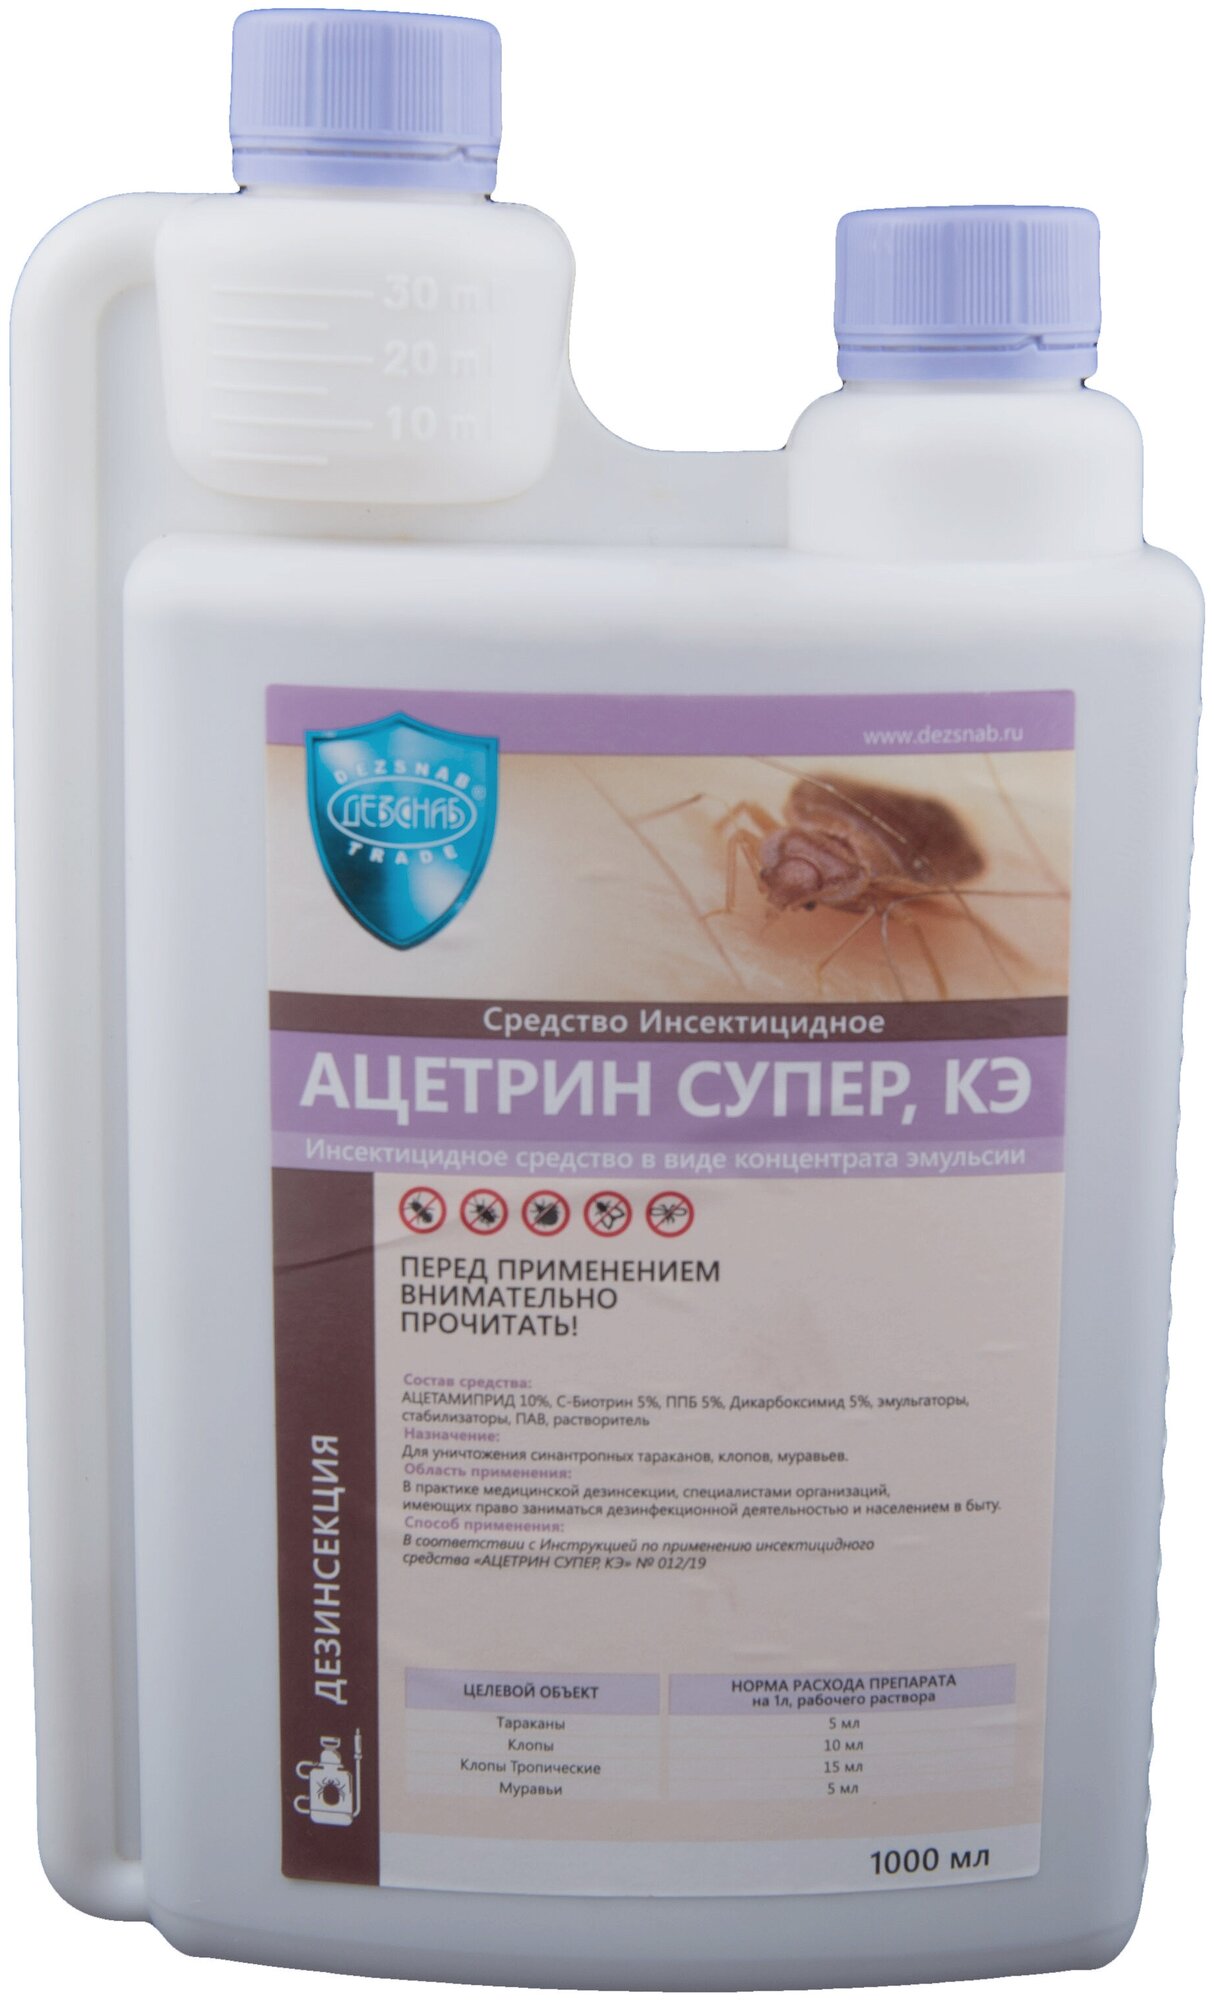 Ацетрин Супер, КЭ 1л - используется для уничтожения клопов, тропических клопов, тараканов, муравьев.